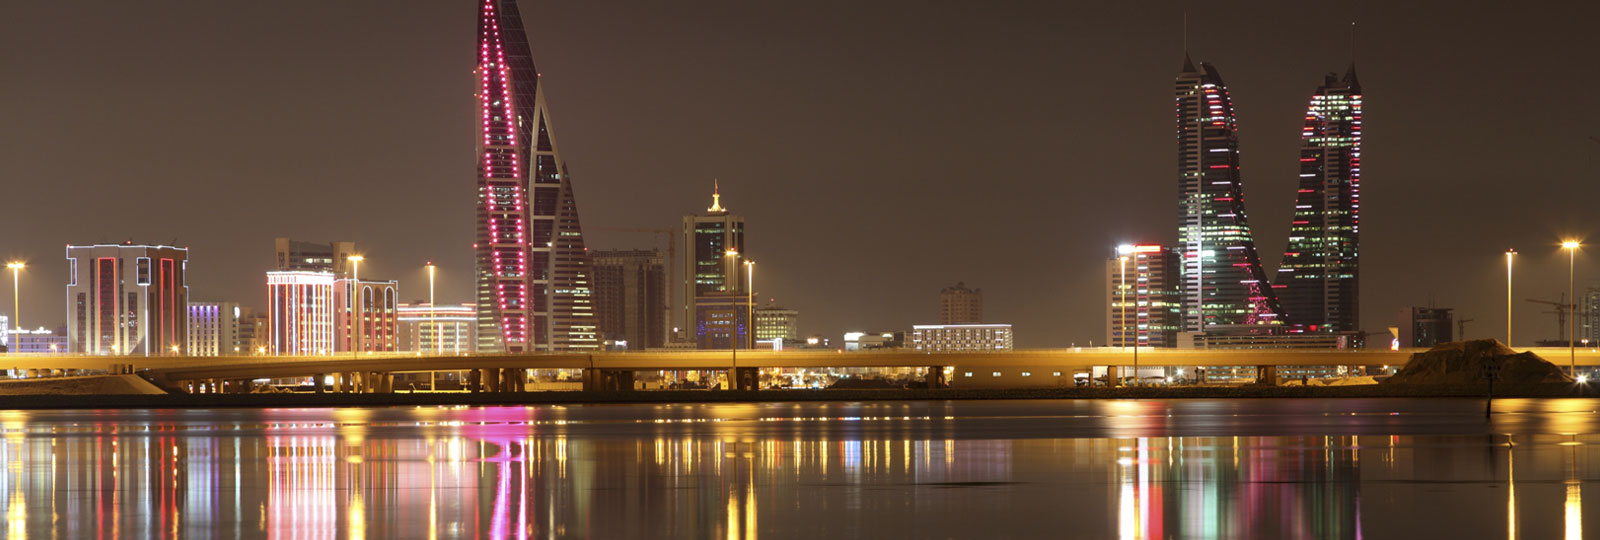 أماكن الجذب السياحي في البحرين